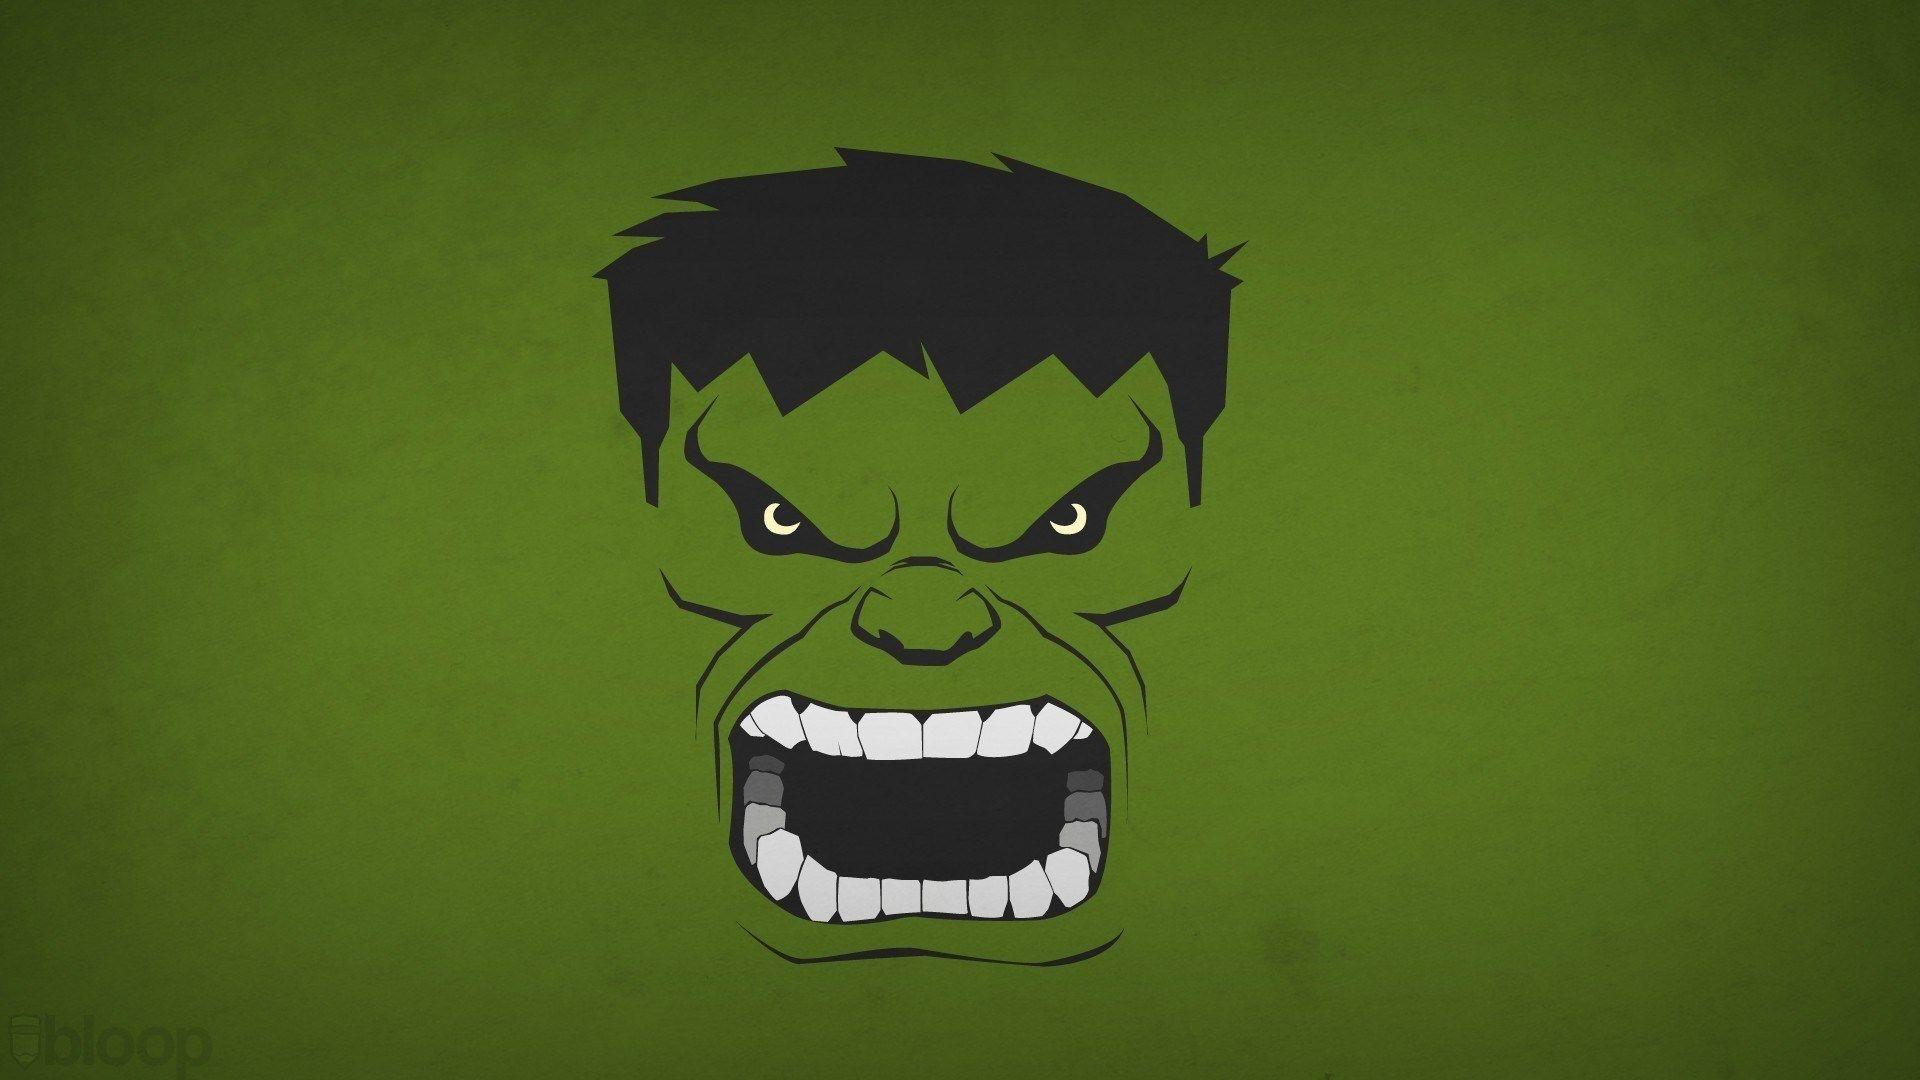 Hulk Logo Wallpaper Free Hulk Logo Background